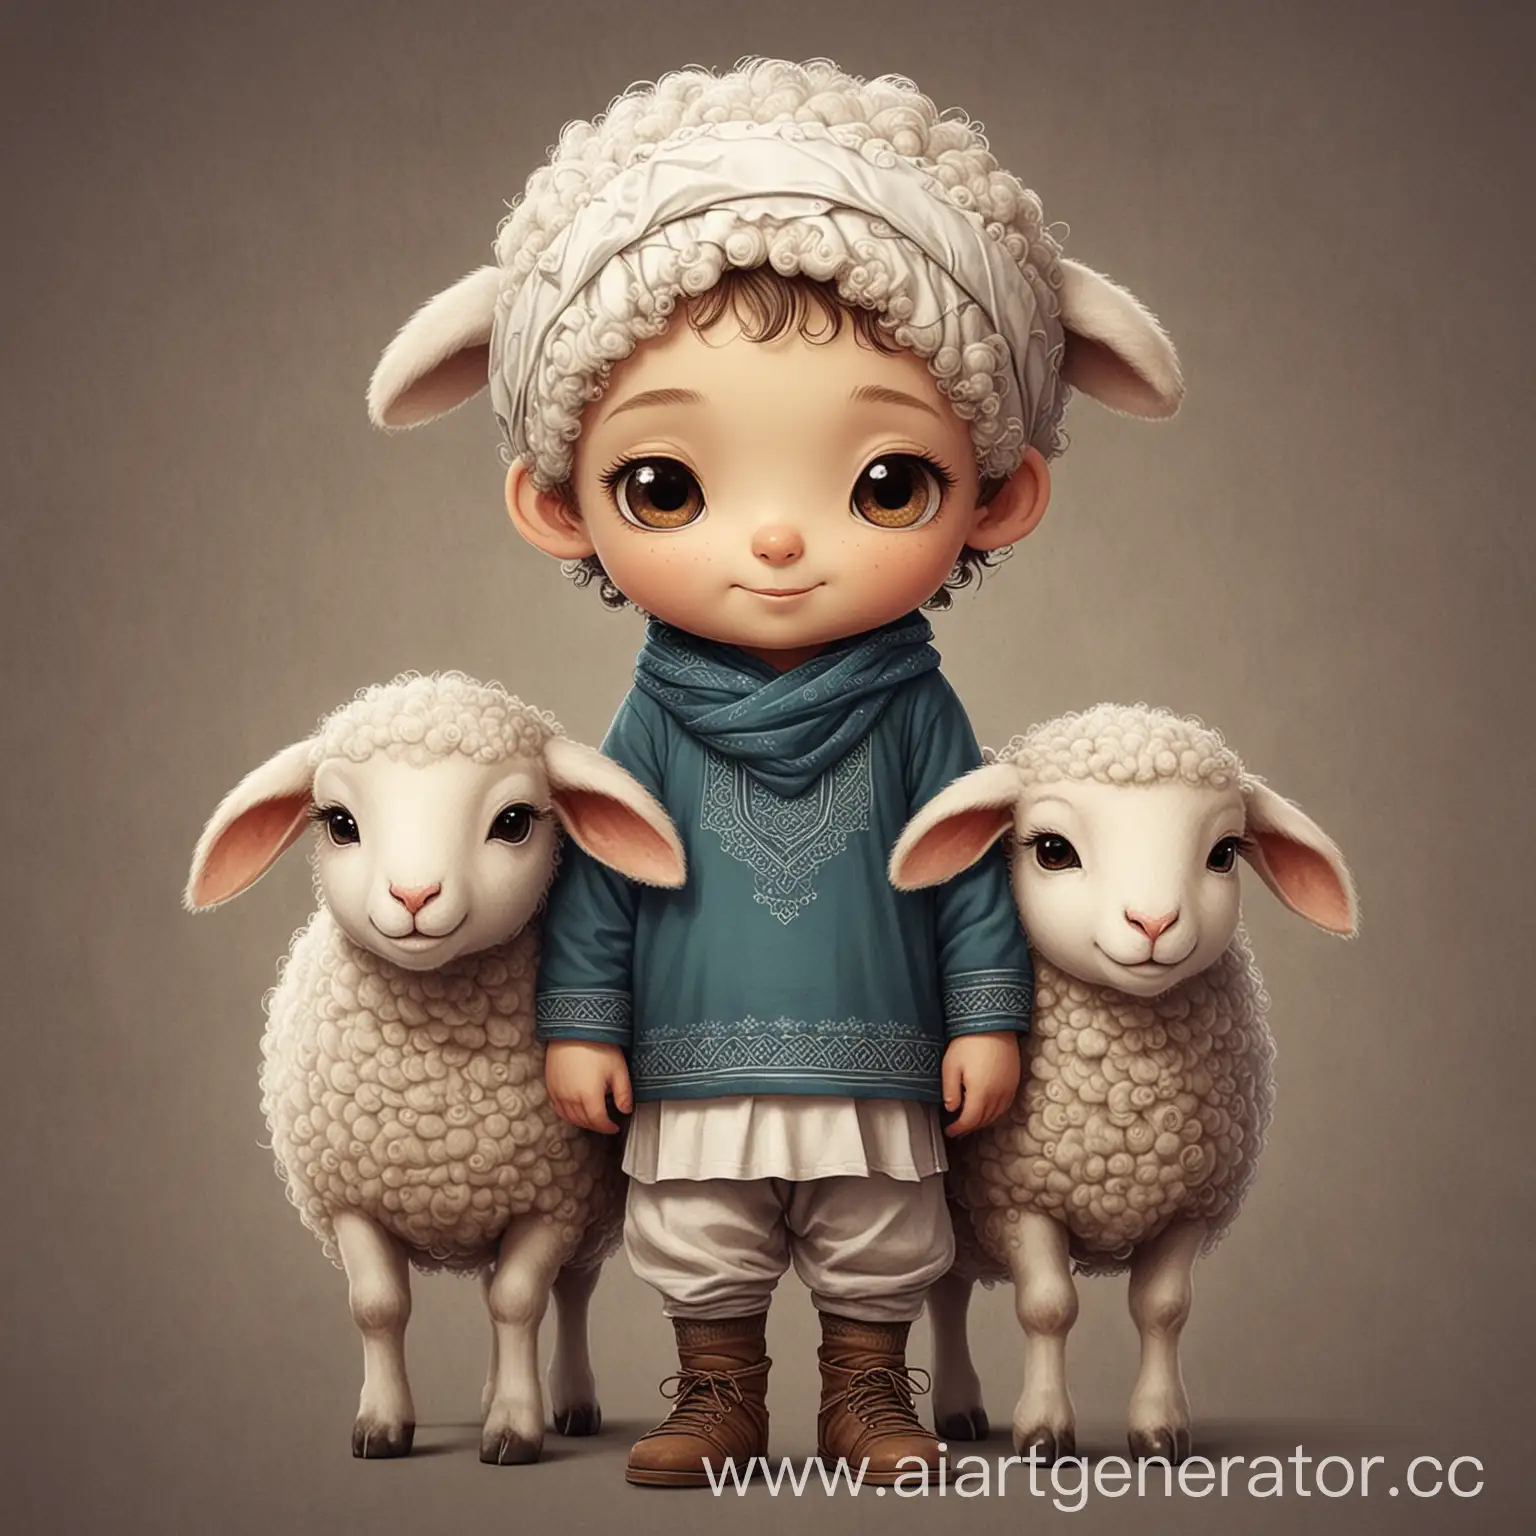 нарисуй милую овечку и мальчика рядом а задний фон сделай исламским